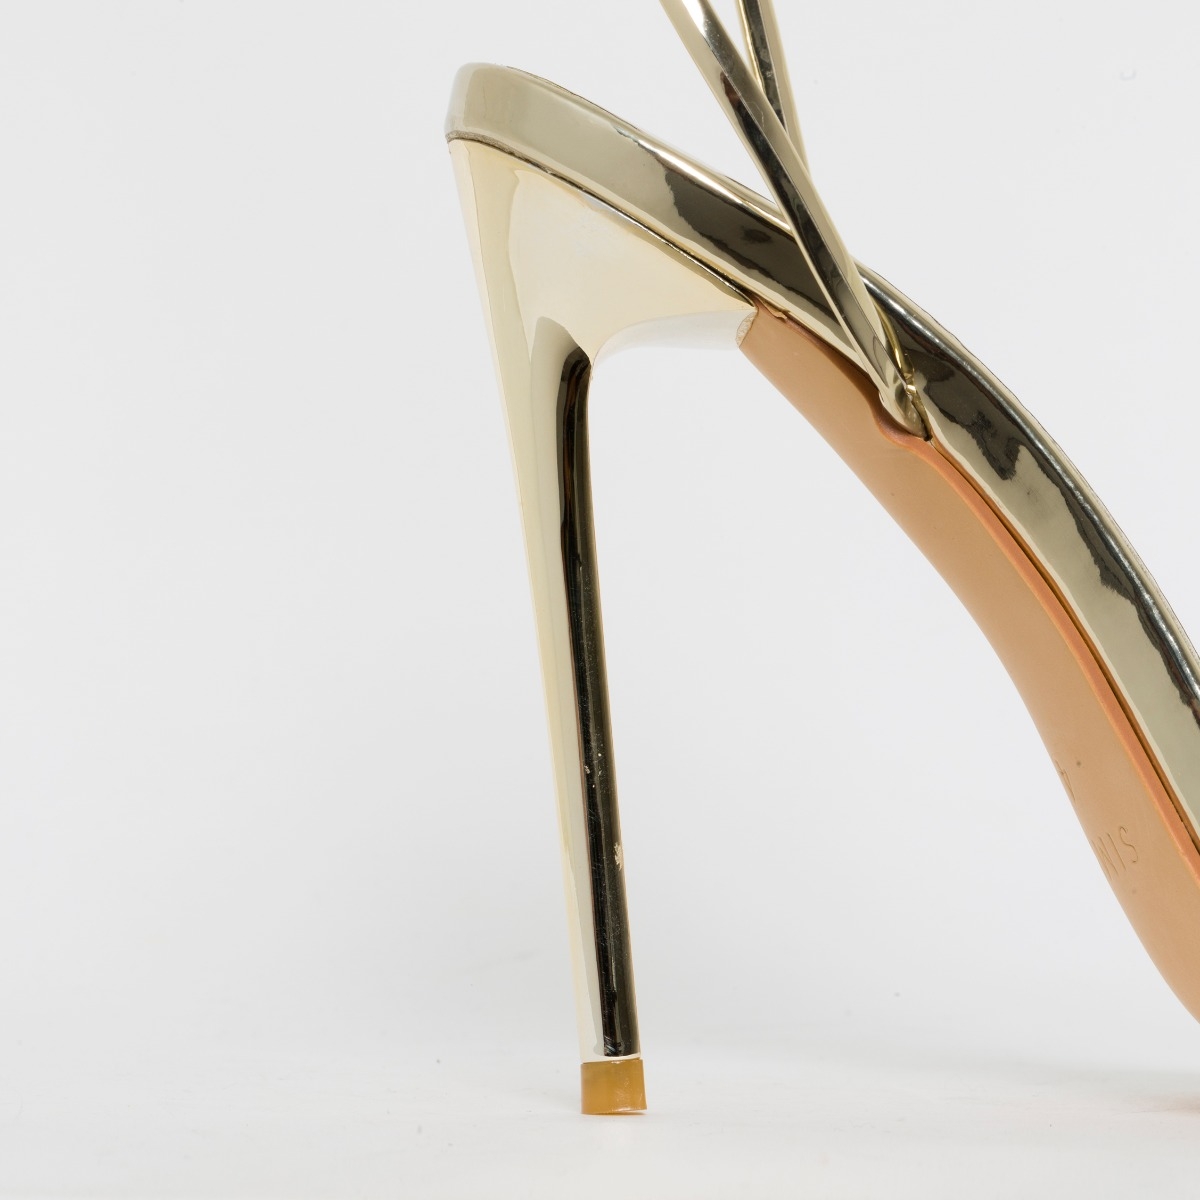 Whitney Gold Mirror Tie Up Stiletto Heels